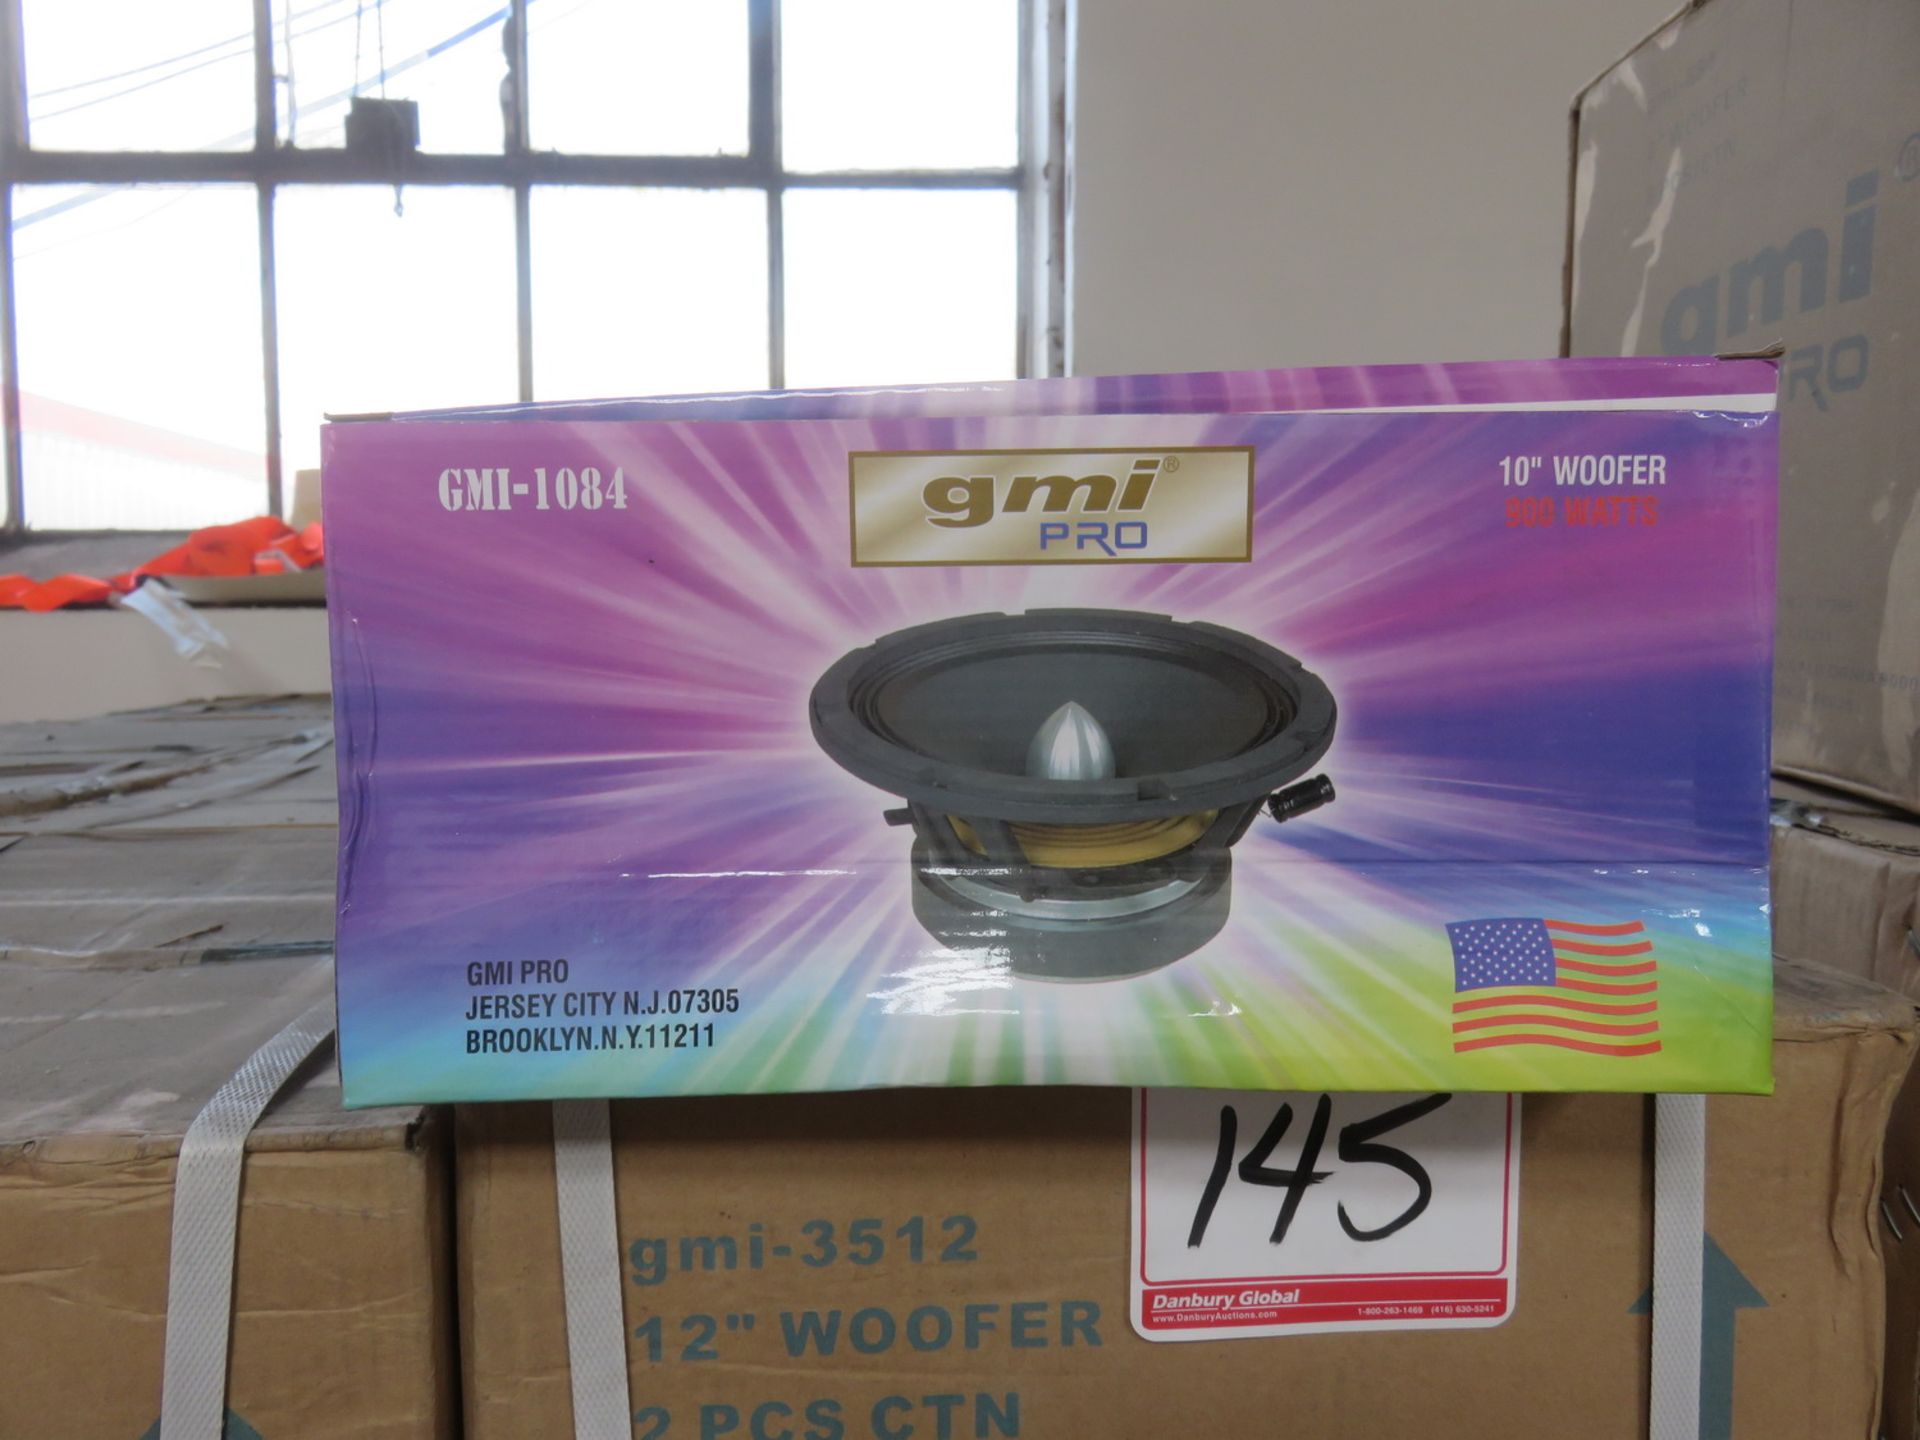 BOXES - GMI MOD 1084, 10" WOOFER SPEAKERS (6PCS/BX)